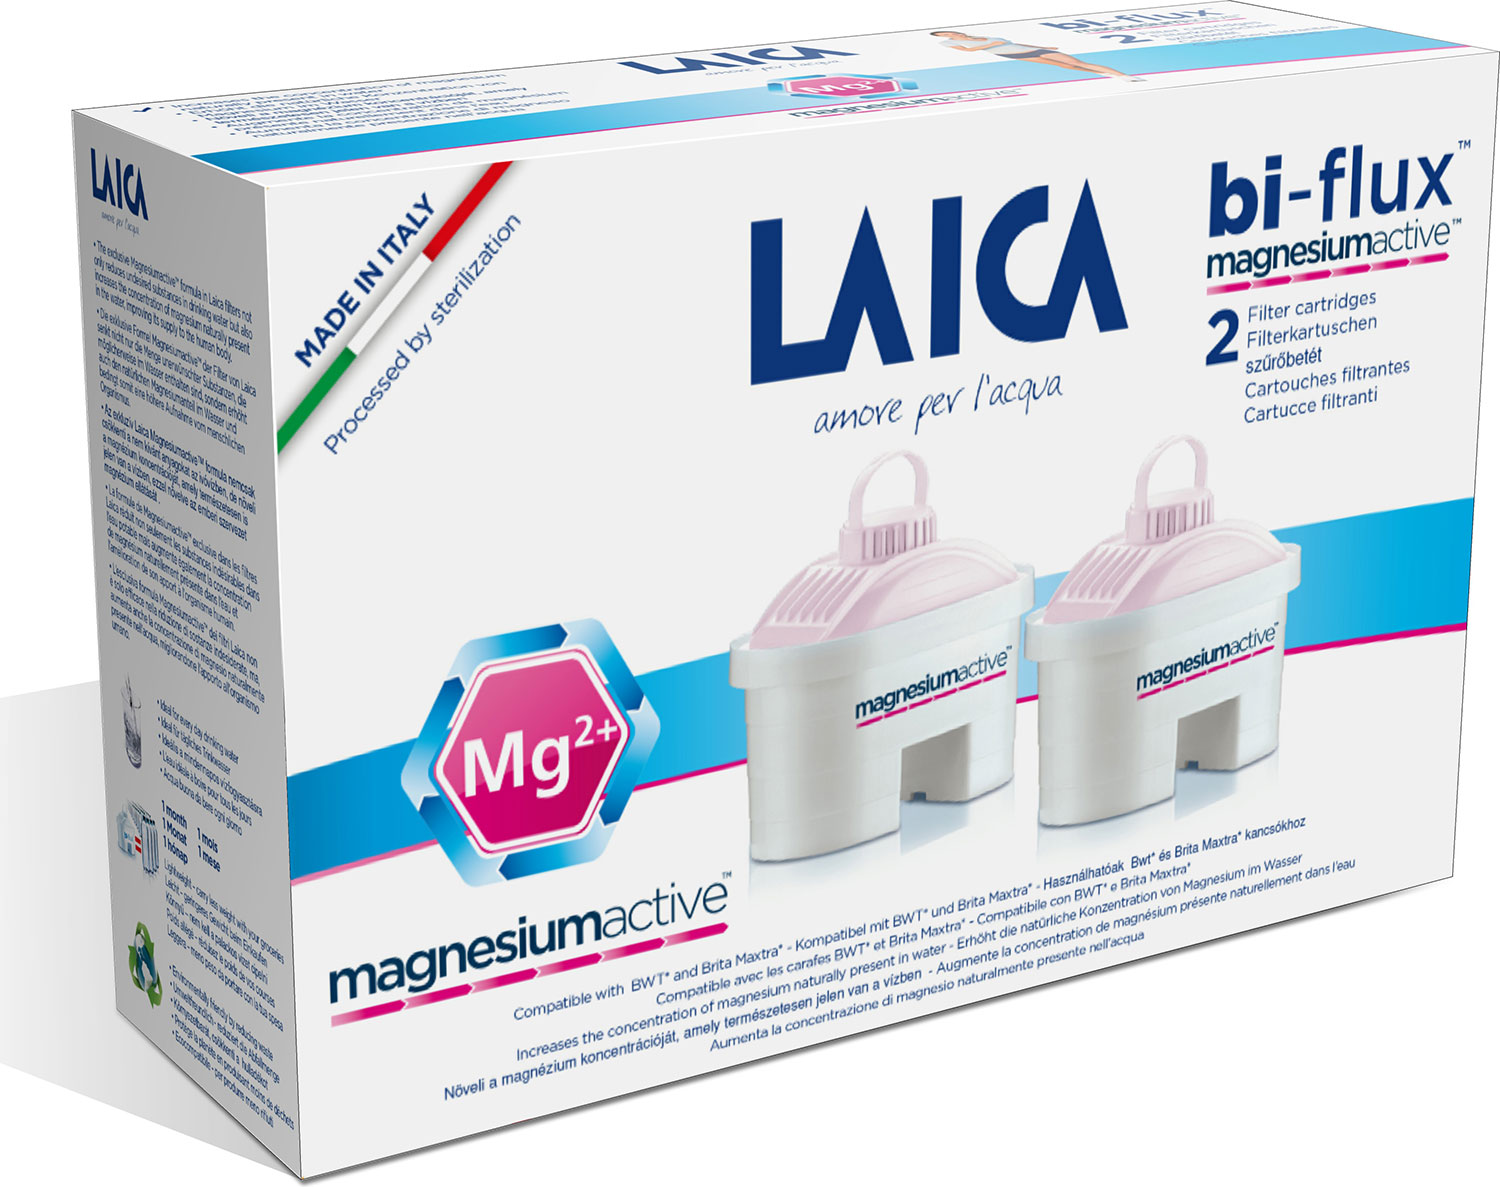 Laica G2M Bi-Flux Cartridge Magnesiumactive náhradné filtre, 2ks